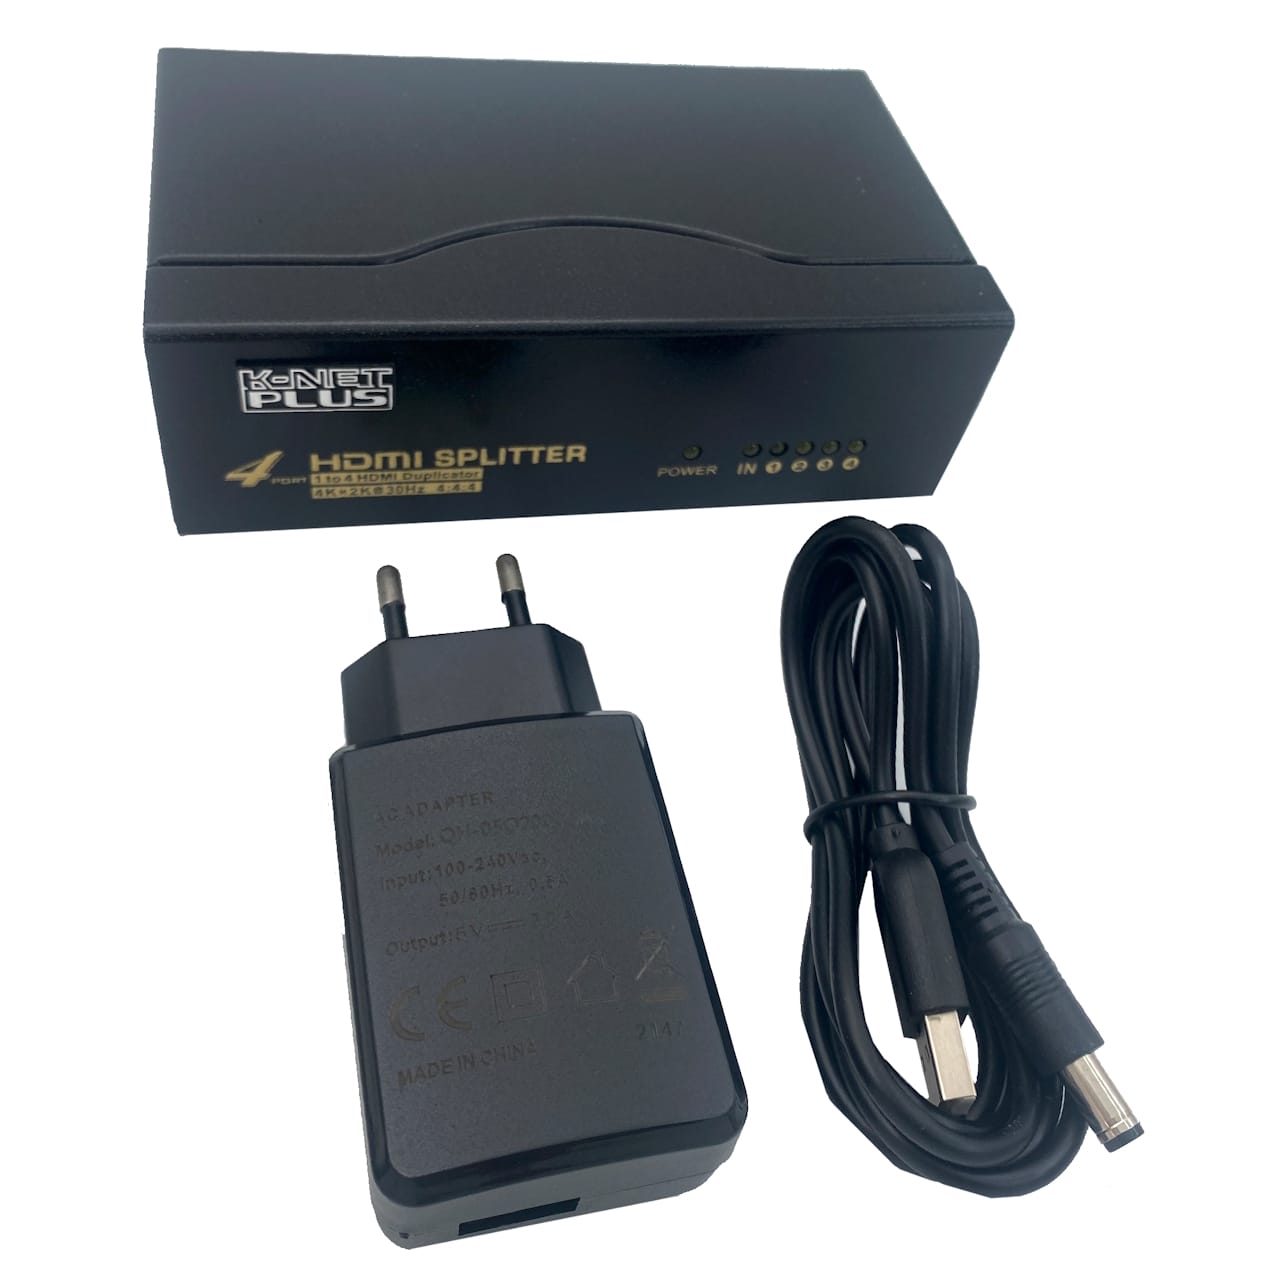 اسپلیتر 4 پورت HDMI کی نت پلاس مدل KPS644